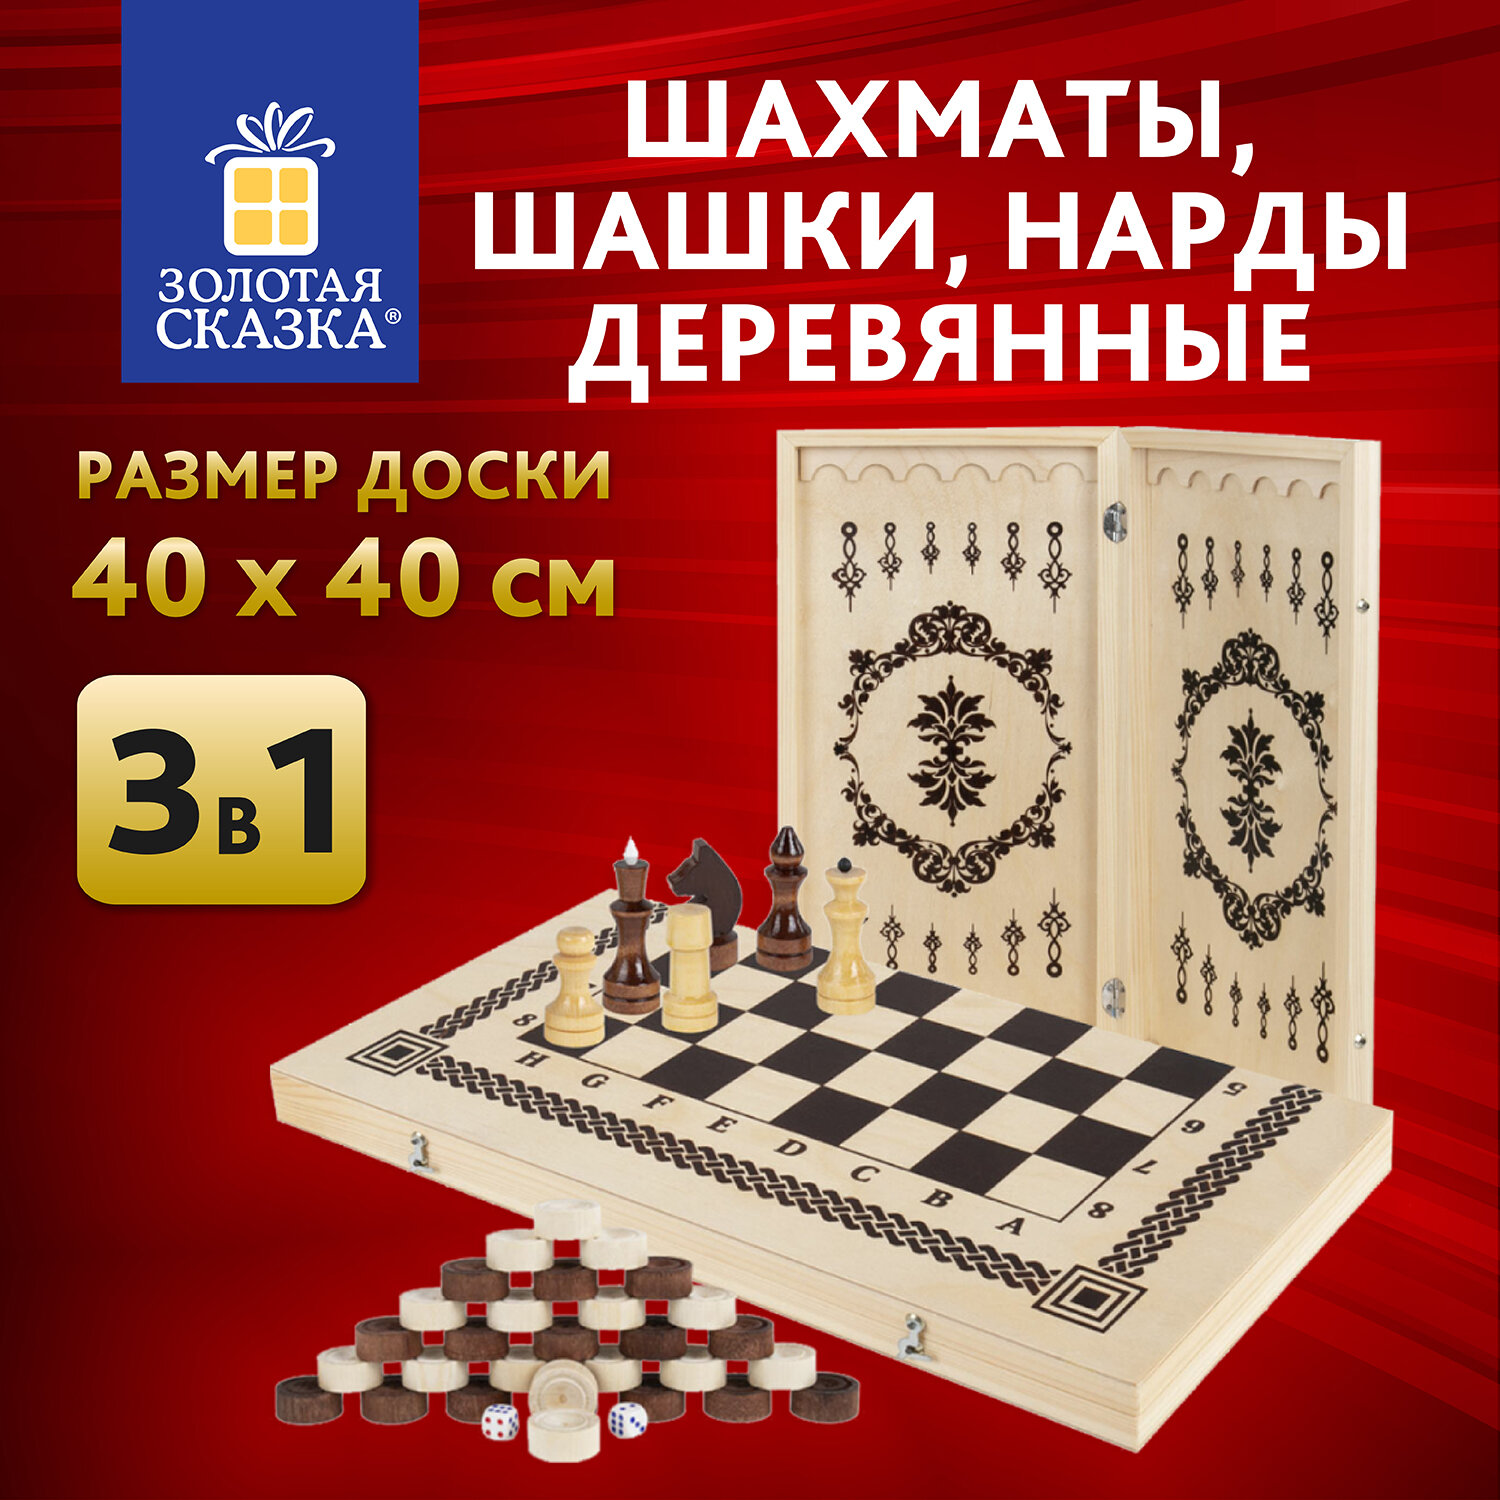 Шахматы Золотая сказка,665364,деревянные, 40х40 см 3в1 шашки, Нарды,подарочный набор набор русские игры шахматы домино доска из микрогофры